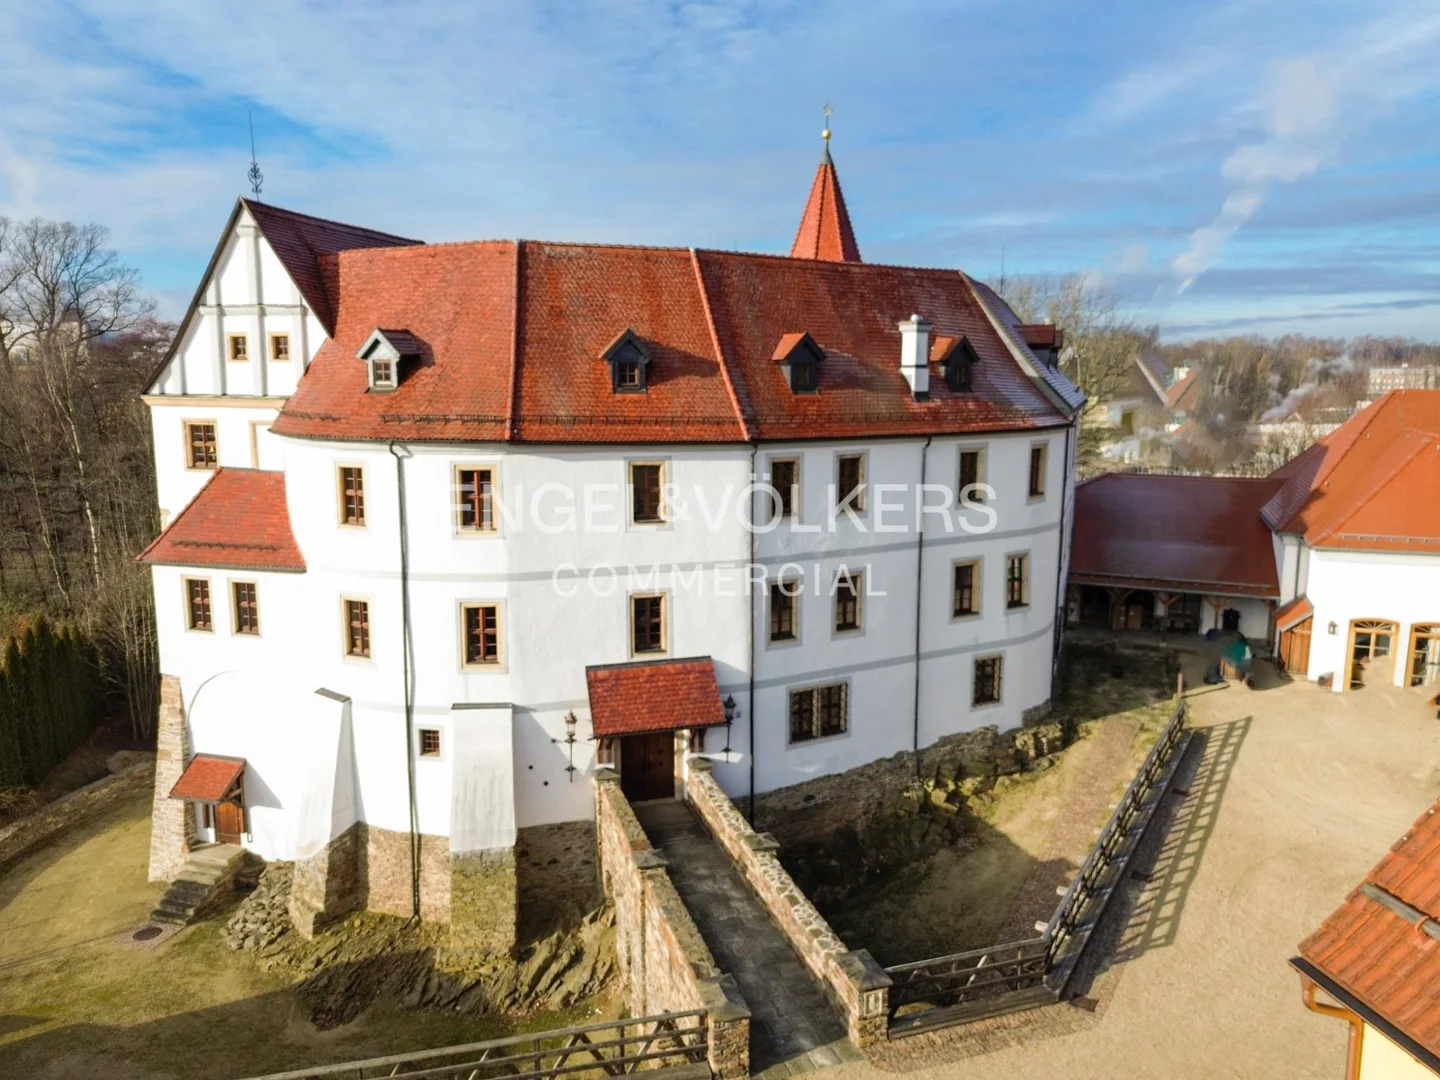 Schloss Weißenborn
historisches, hochwertig saniertes Rittergut vor den Toren Freibergs